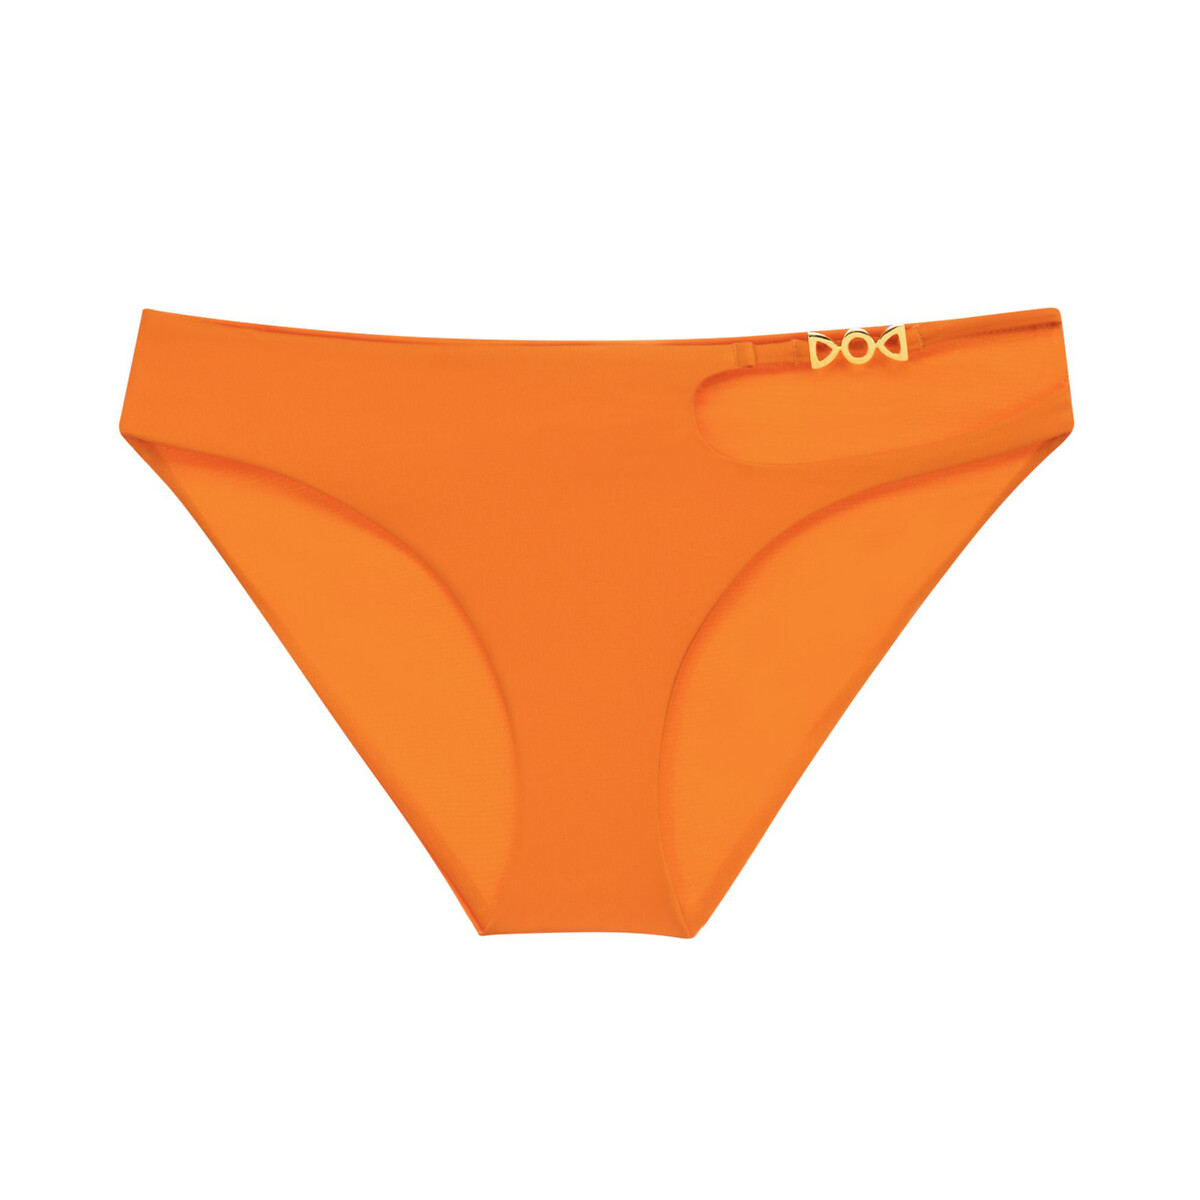 Низ от купальника Astarita XS оранжевый верх от купальника асимметричный astarita l оранжевый